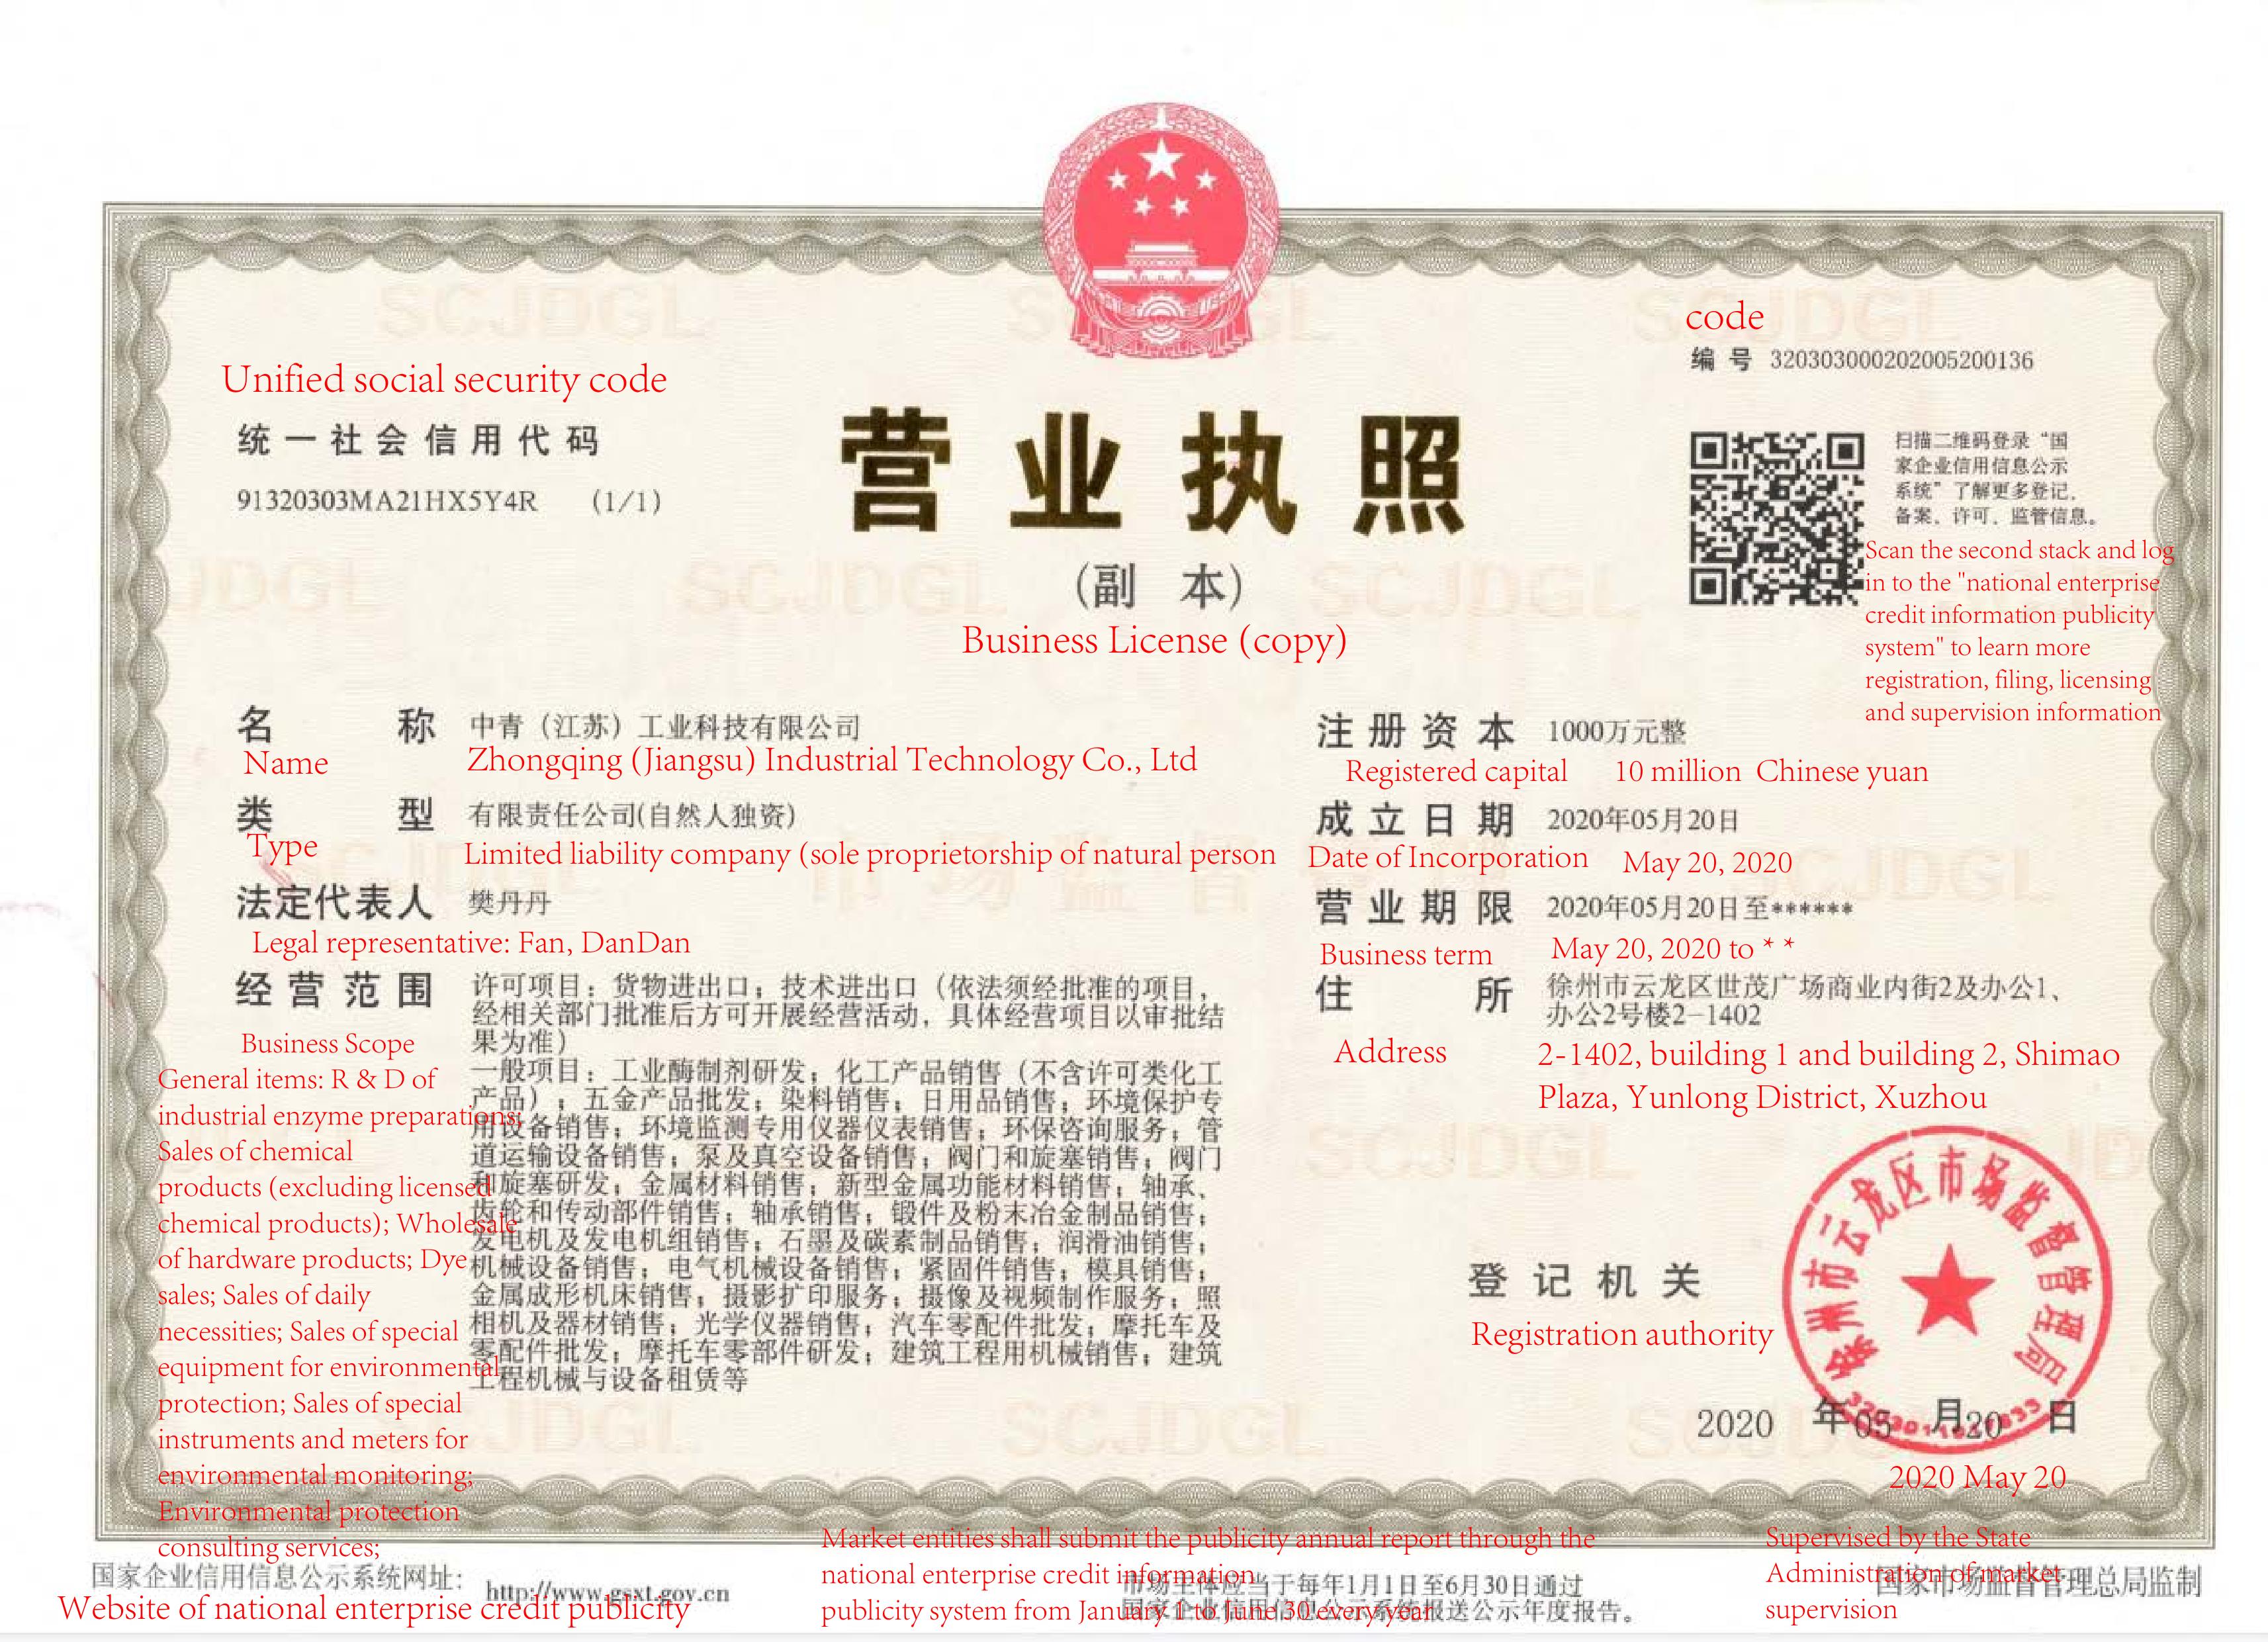 Business license (Zhongqing (jiangsu) Industrial Technology Co., Ltd)